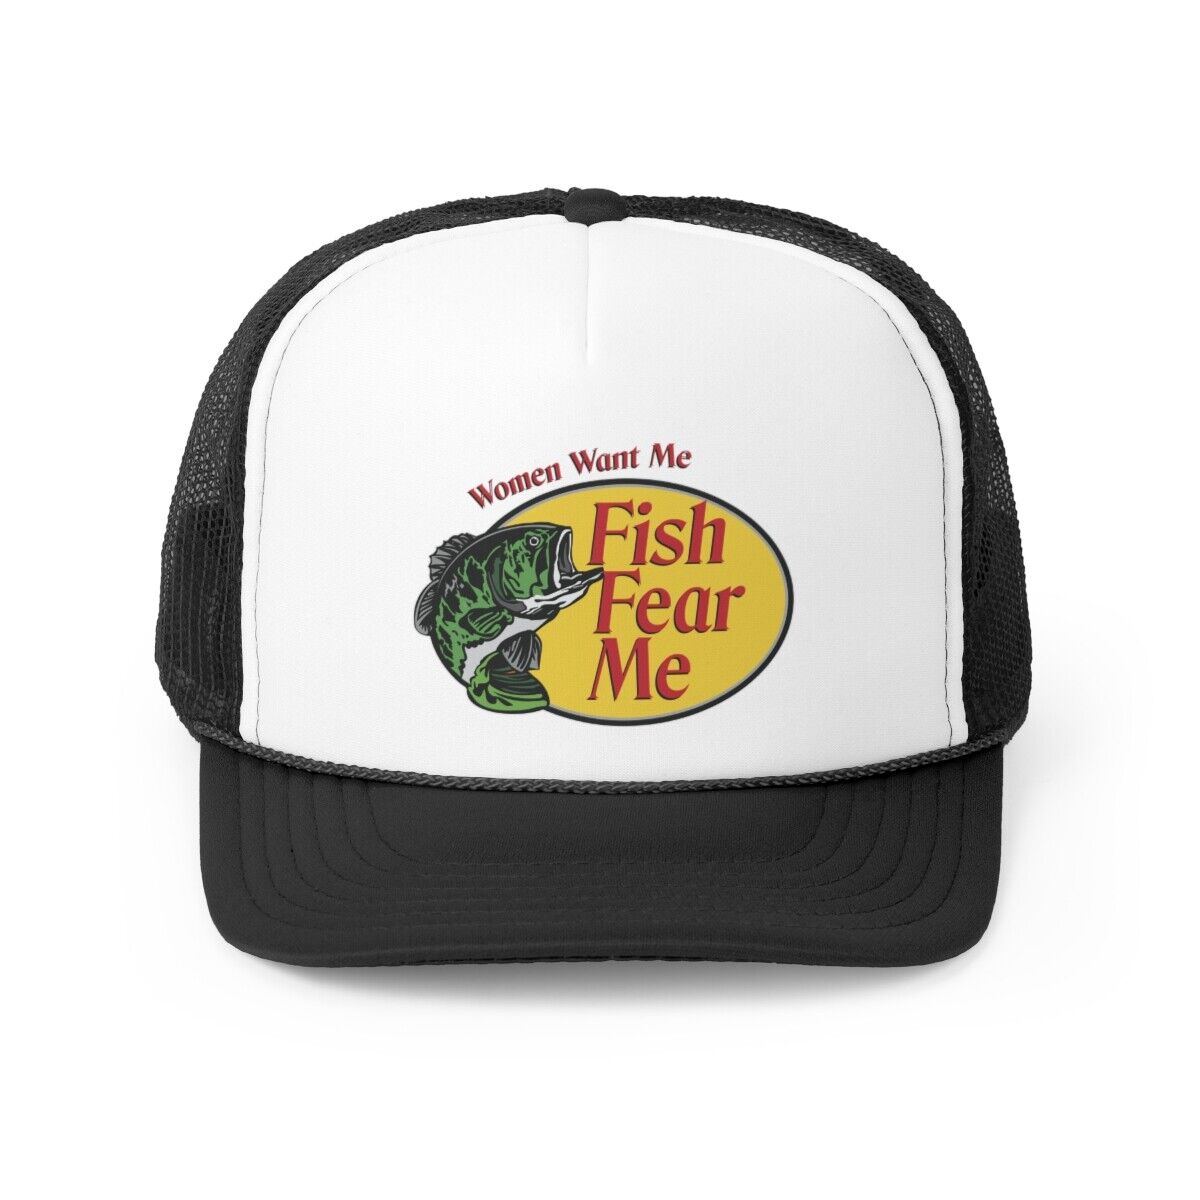 Women Want Me, Fish Fear Me Gag Trucker Hat